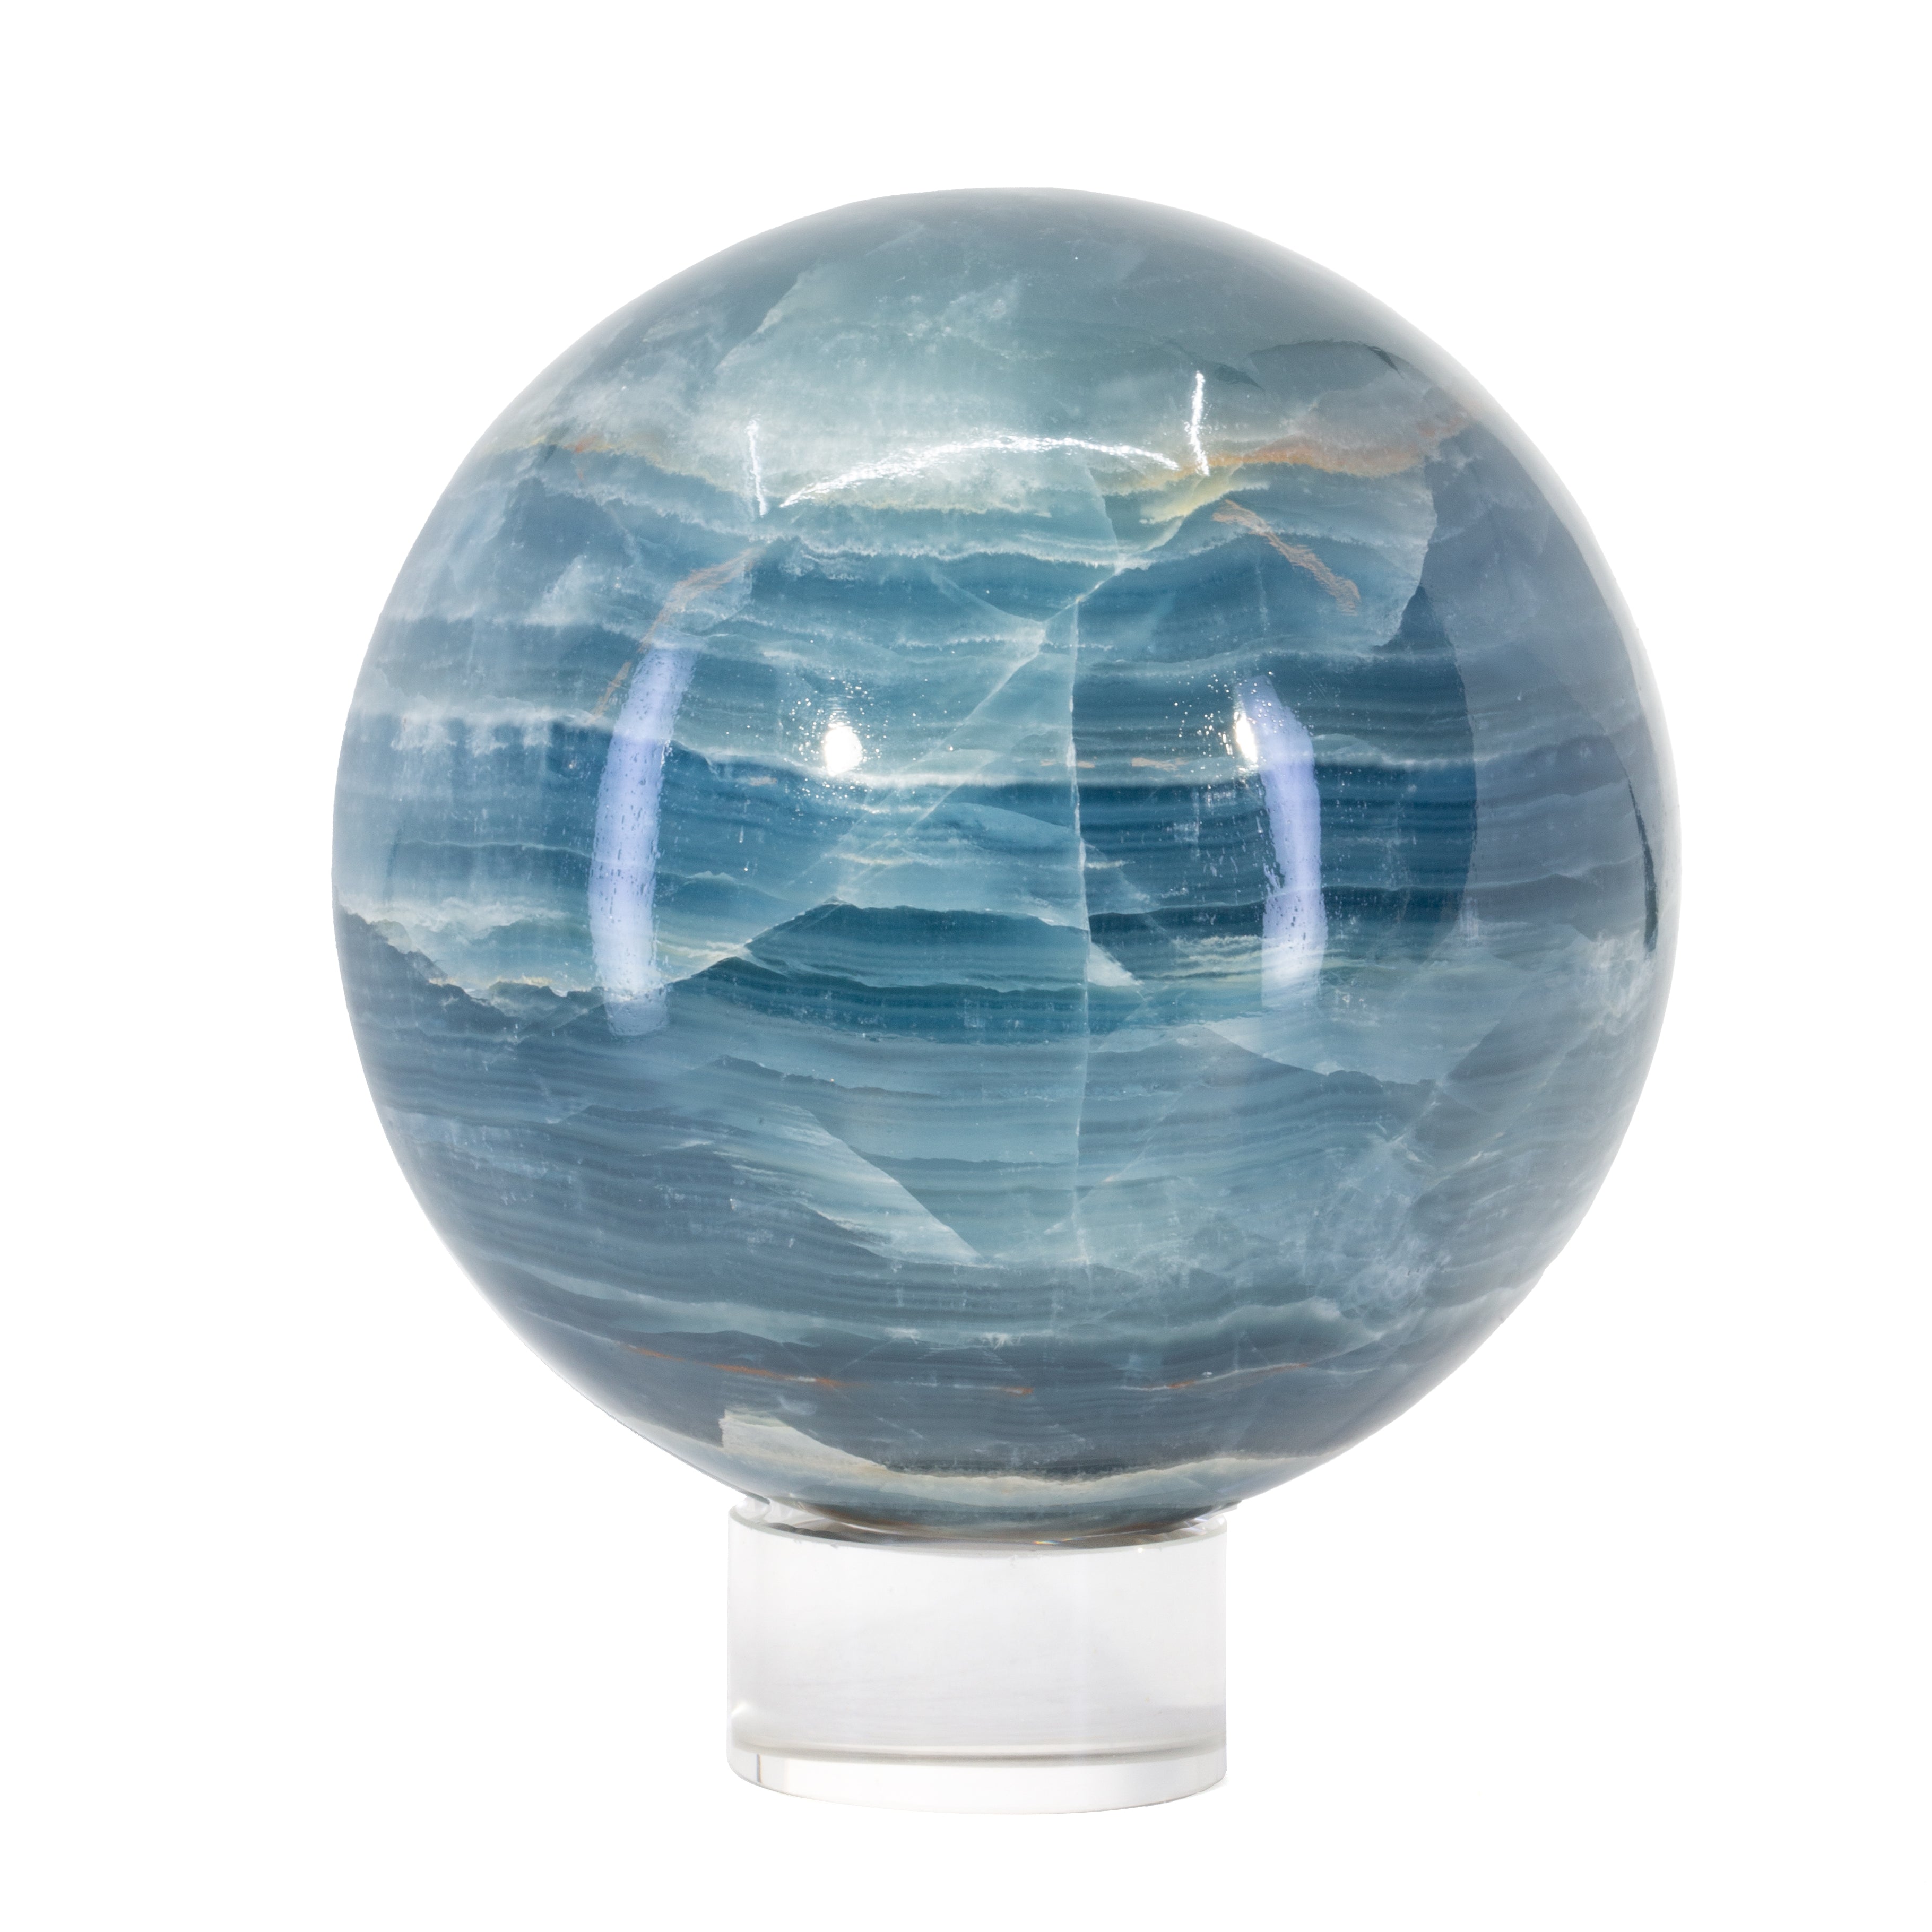 Blue Onyx 3.2lb 3.9 inch Polished Crystal Sphere - Argentina - JJL-048 - Crystalarium